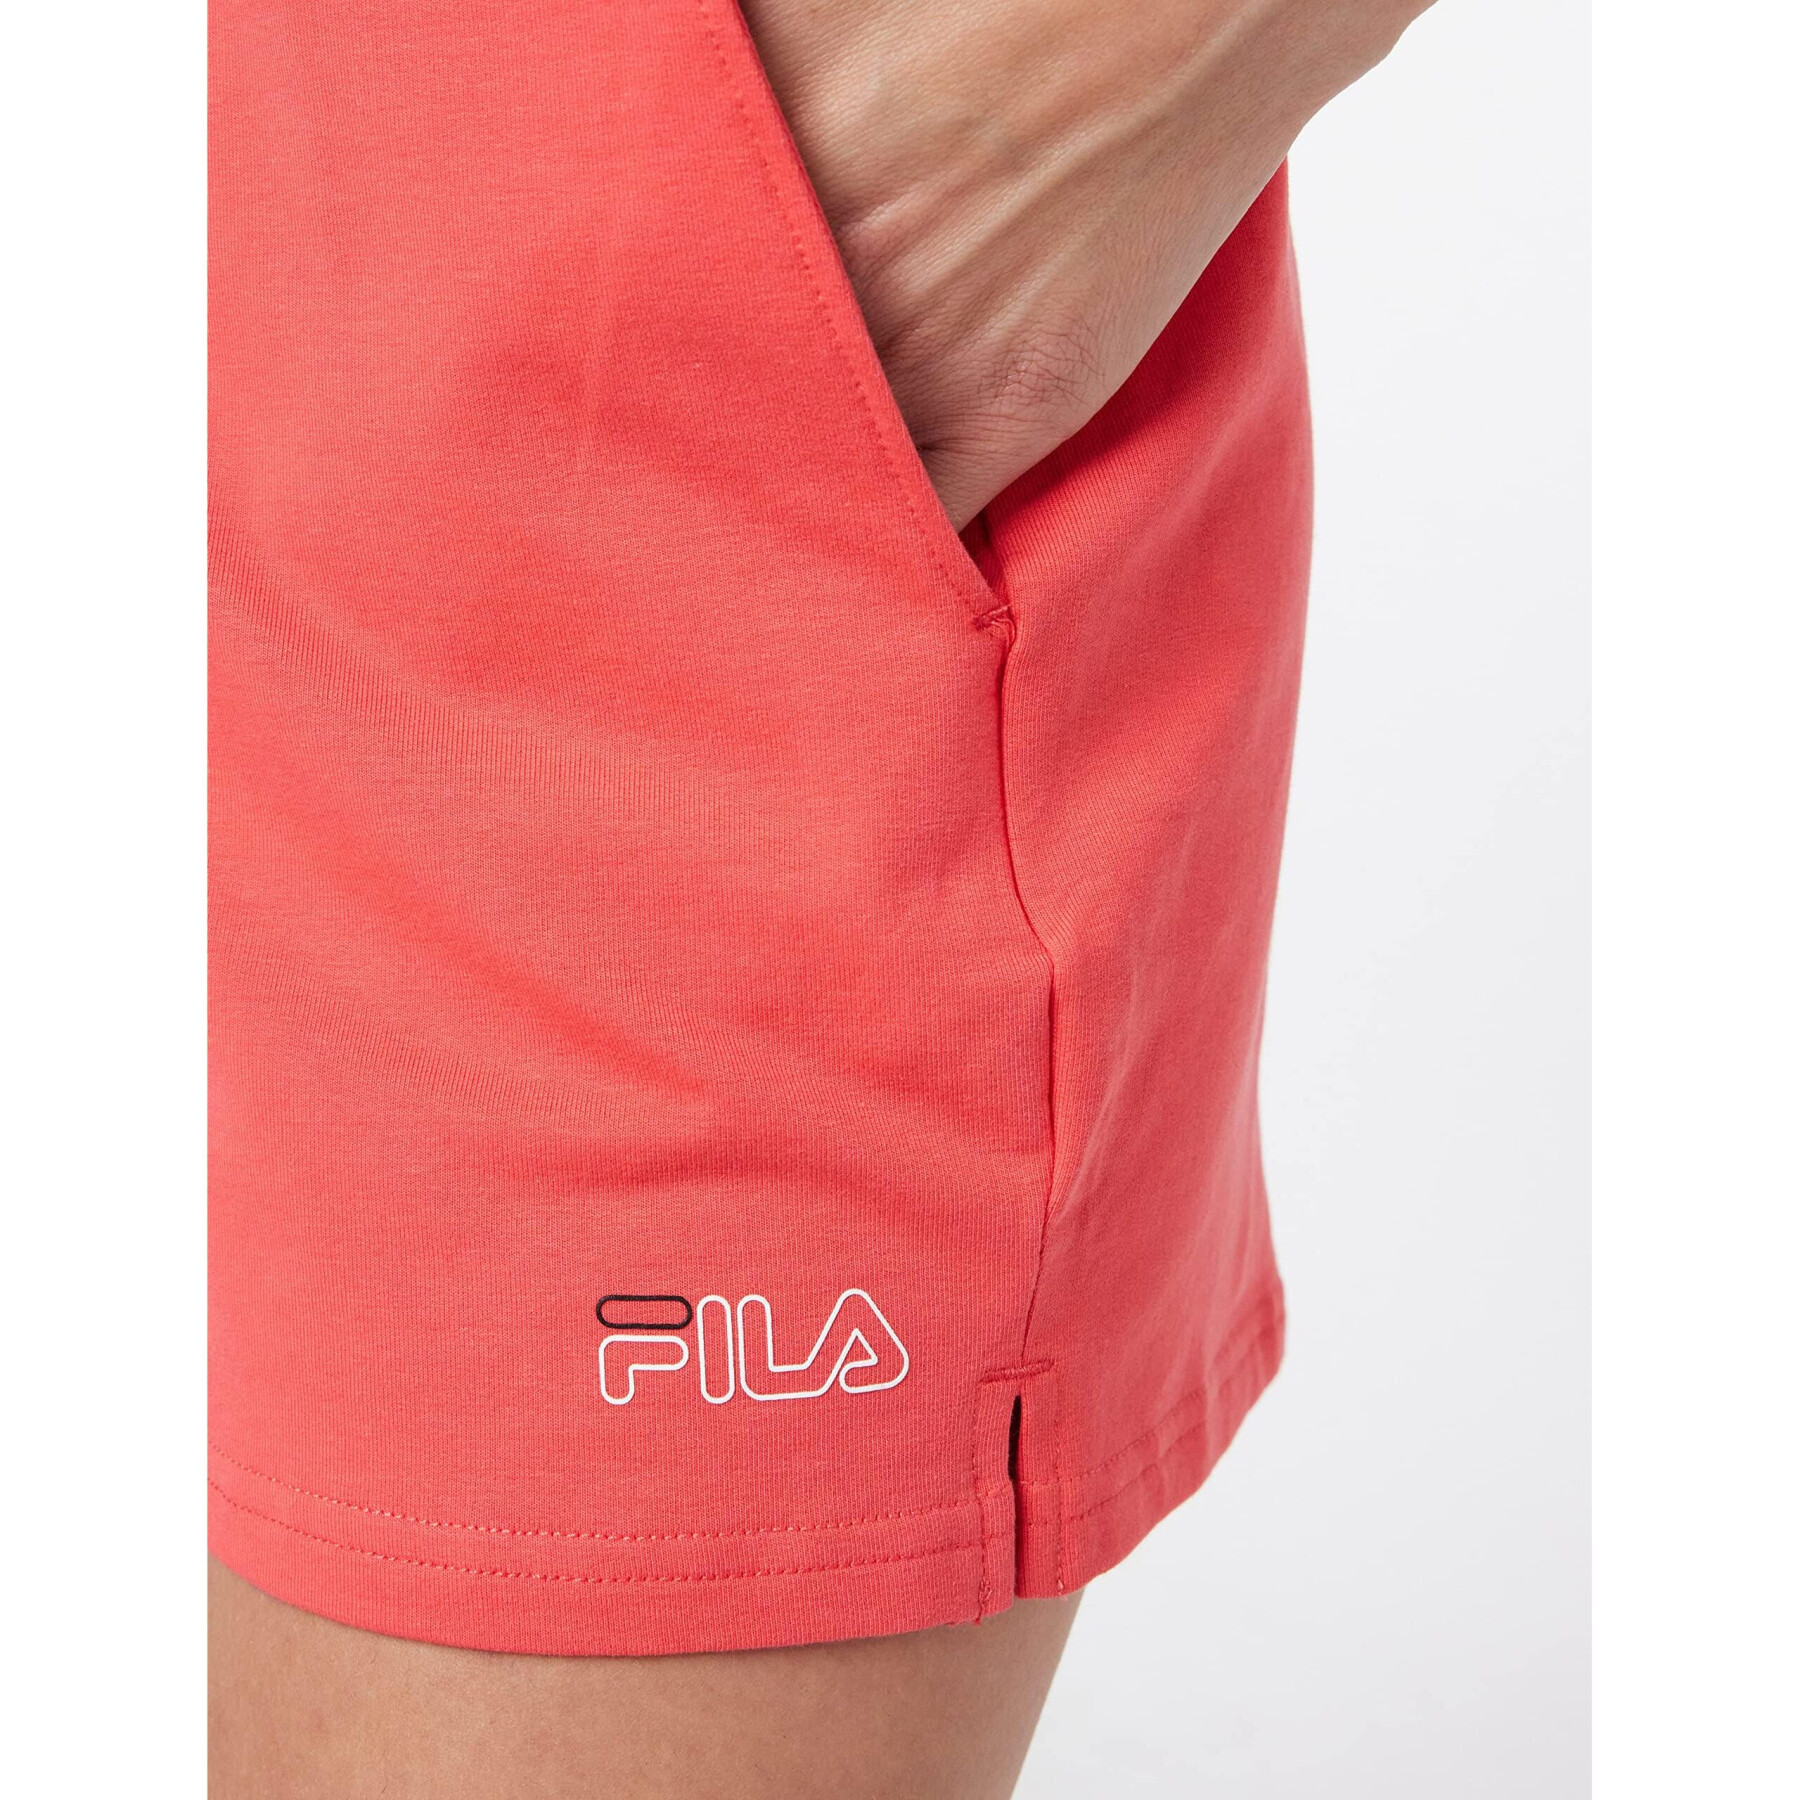 Women's shorts Fila Sossai